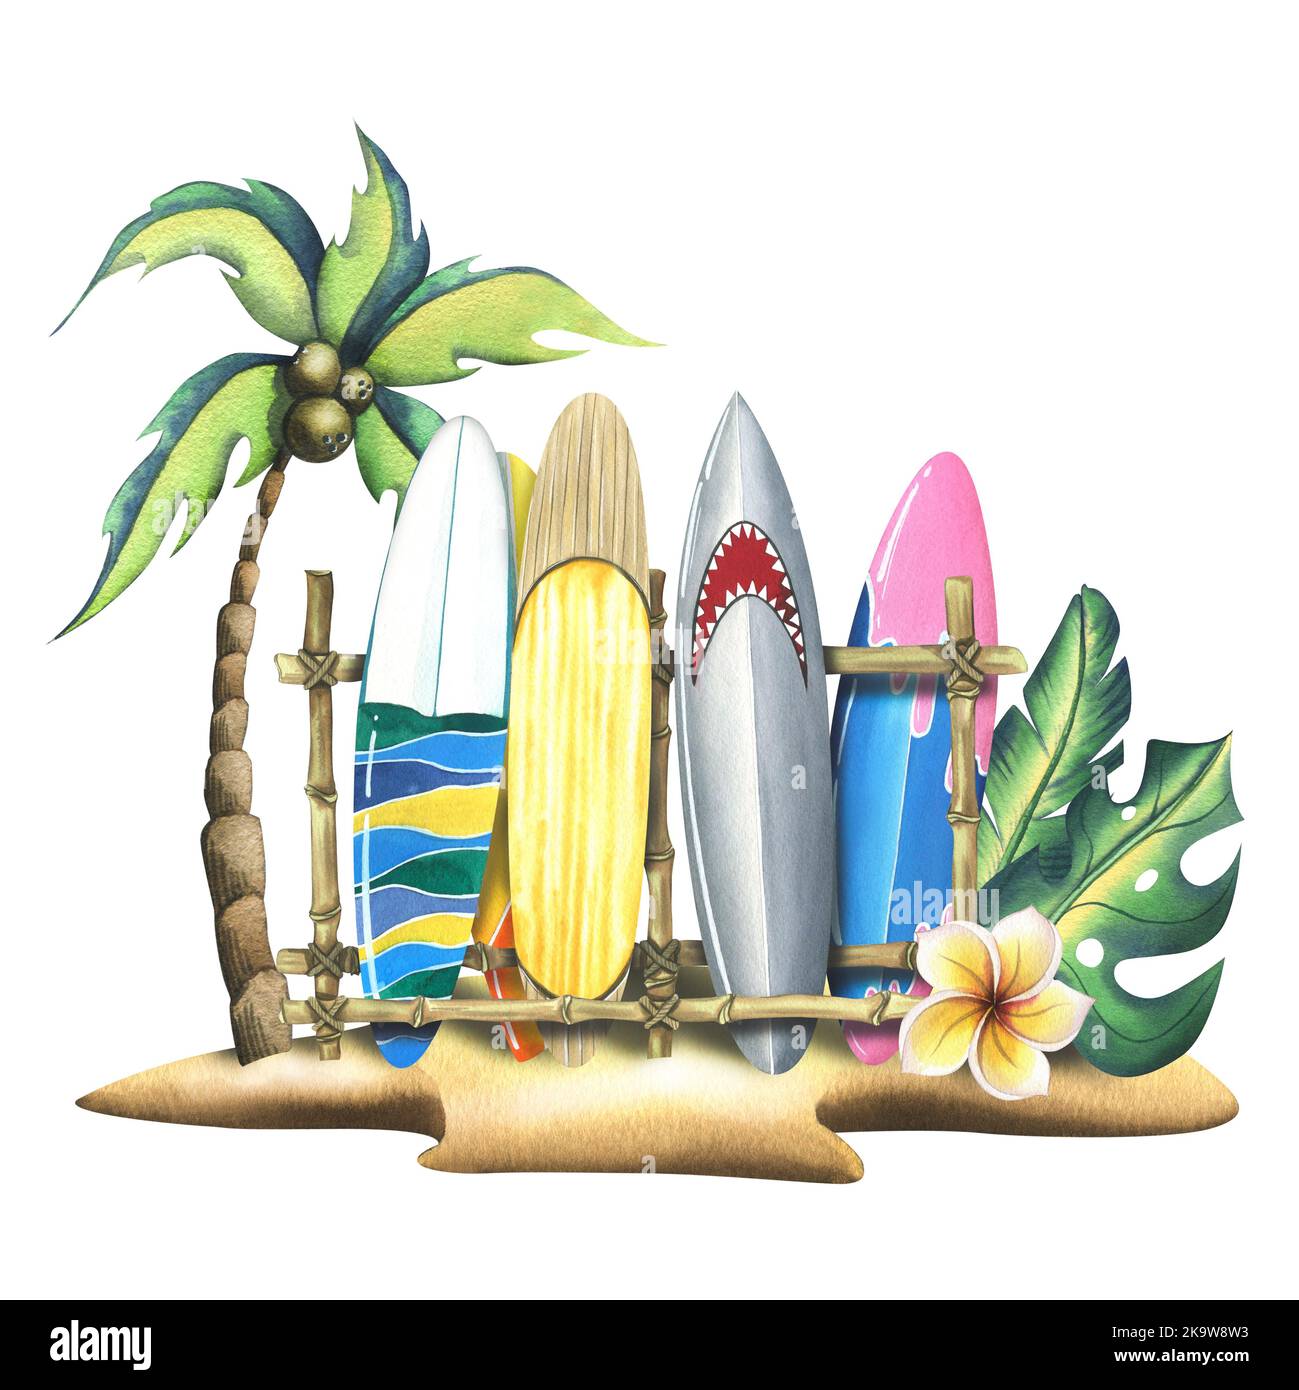 Eine tropische Insel mit einer Kokospalme, einer Plumeria-Blume, Blättern und Surfbrettern auf einem Stand. Aquarell-Illustration im Cartoon-Stil. Komposition aus Stockfoto